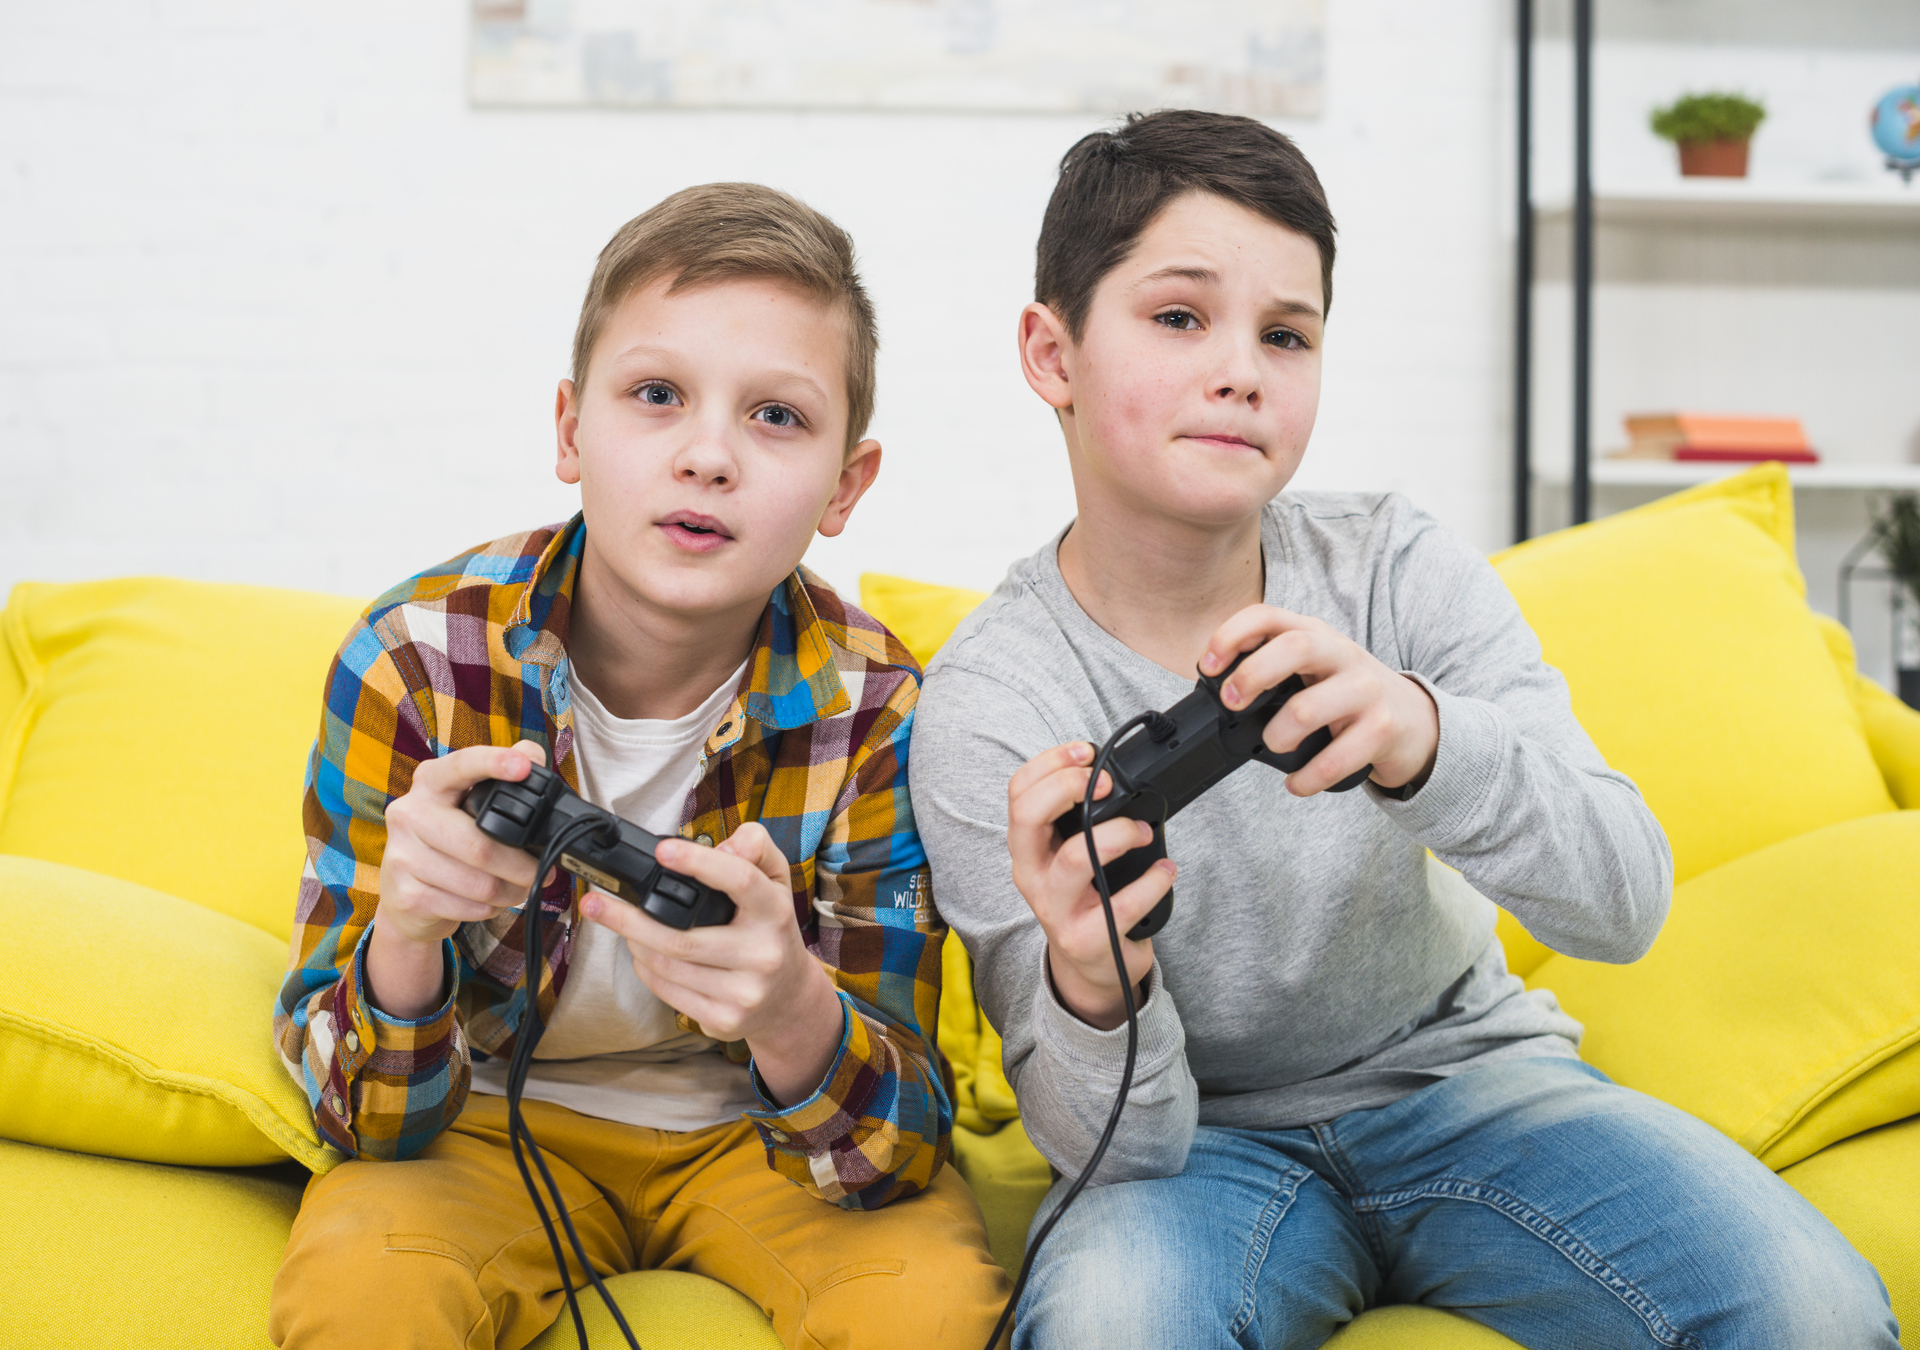 Невролог Зайцева: видеоигры развивают внимание и быстроту реагирования